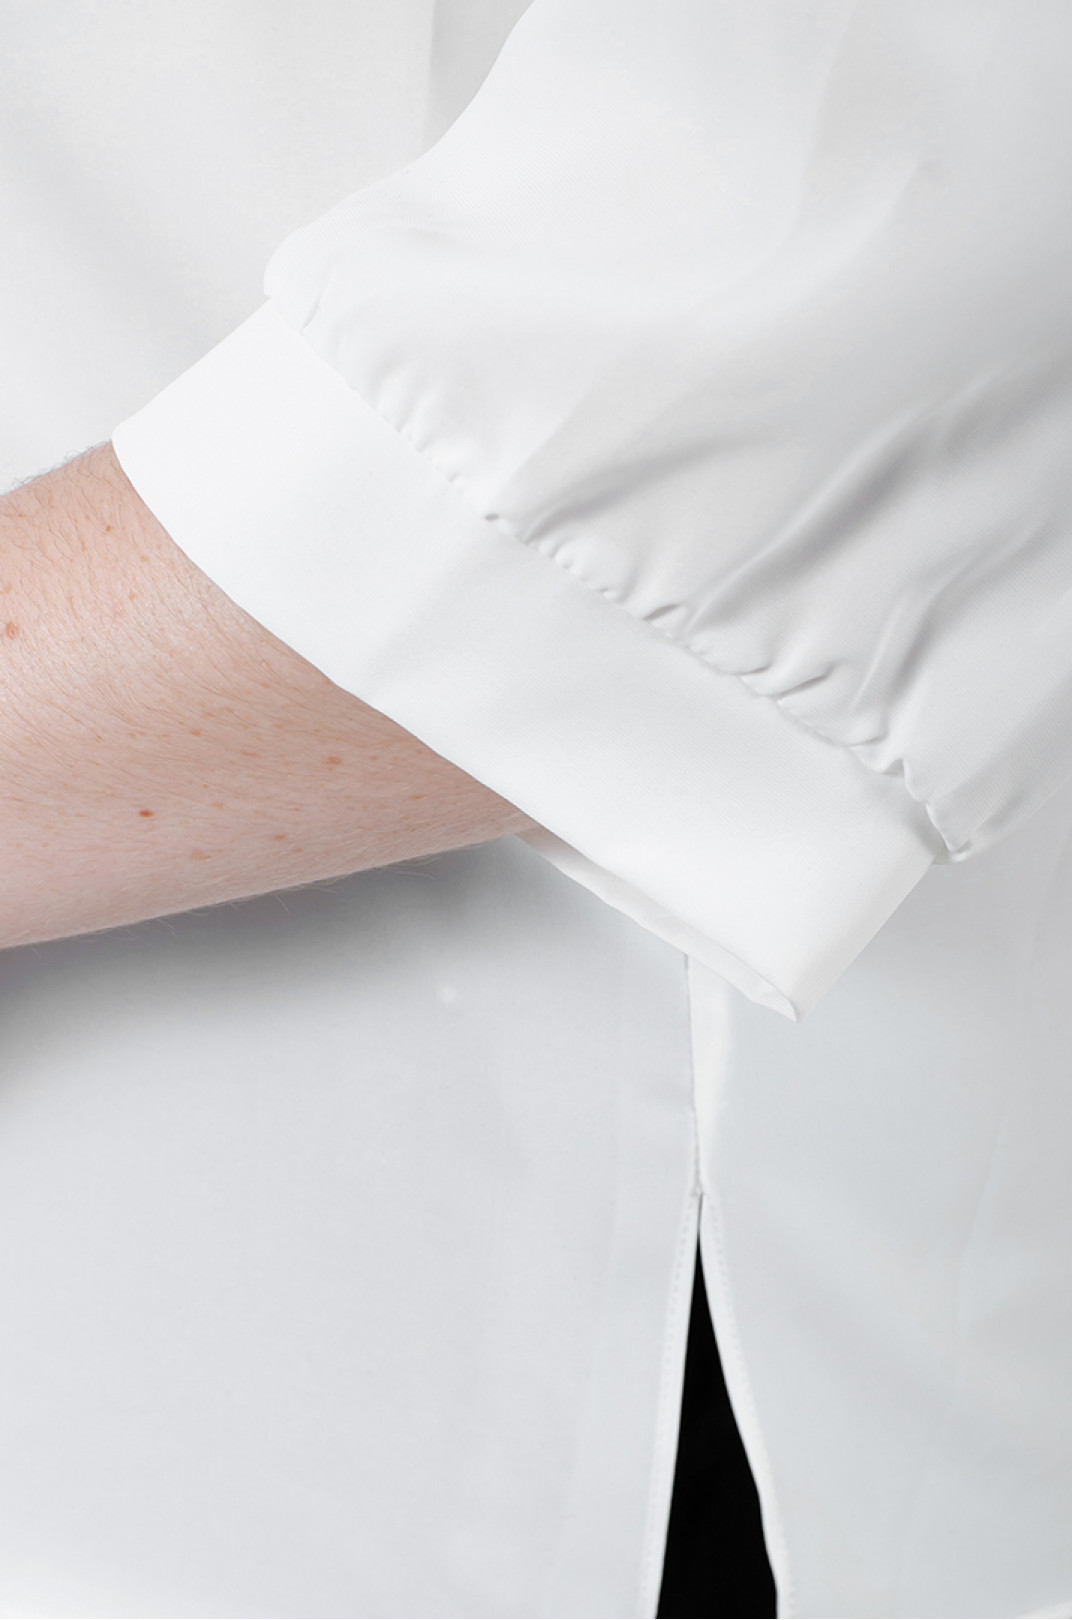 Элегантная белая блуза с украшением батал